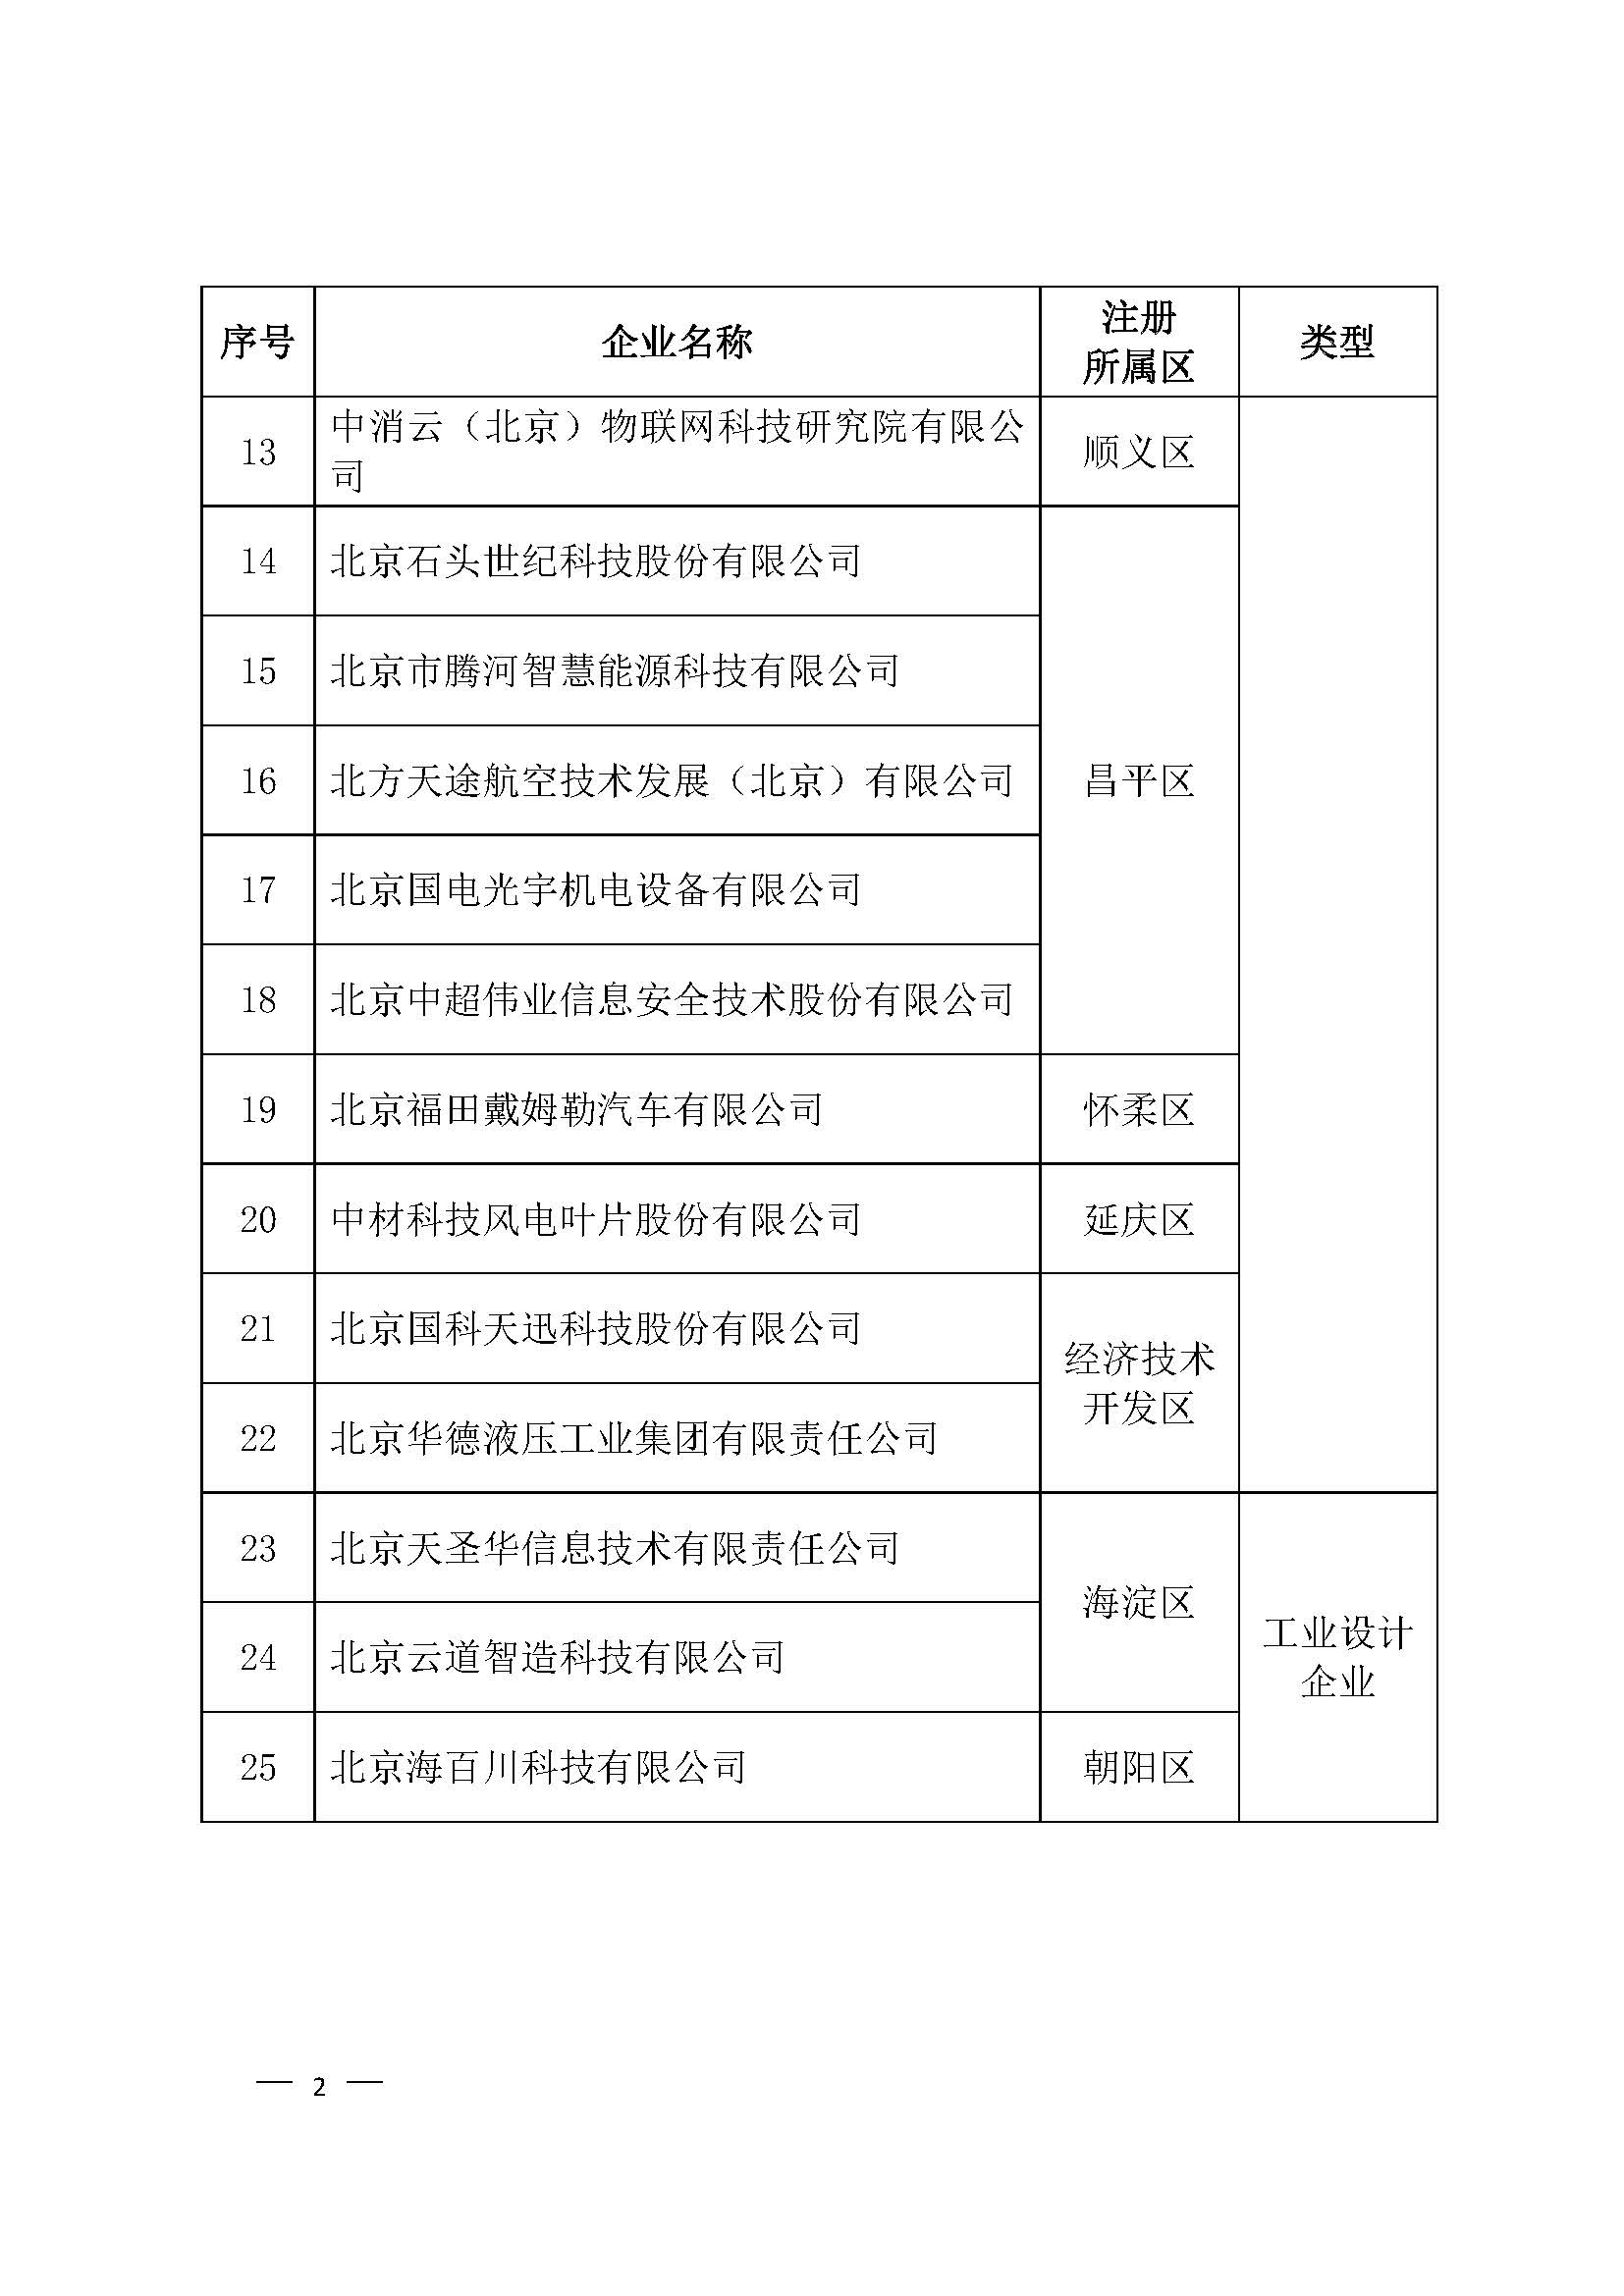 北京市高精尖产业设计中心认定名单